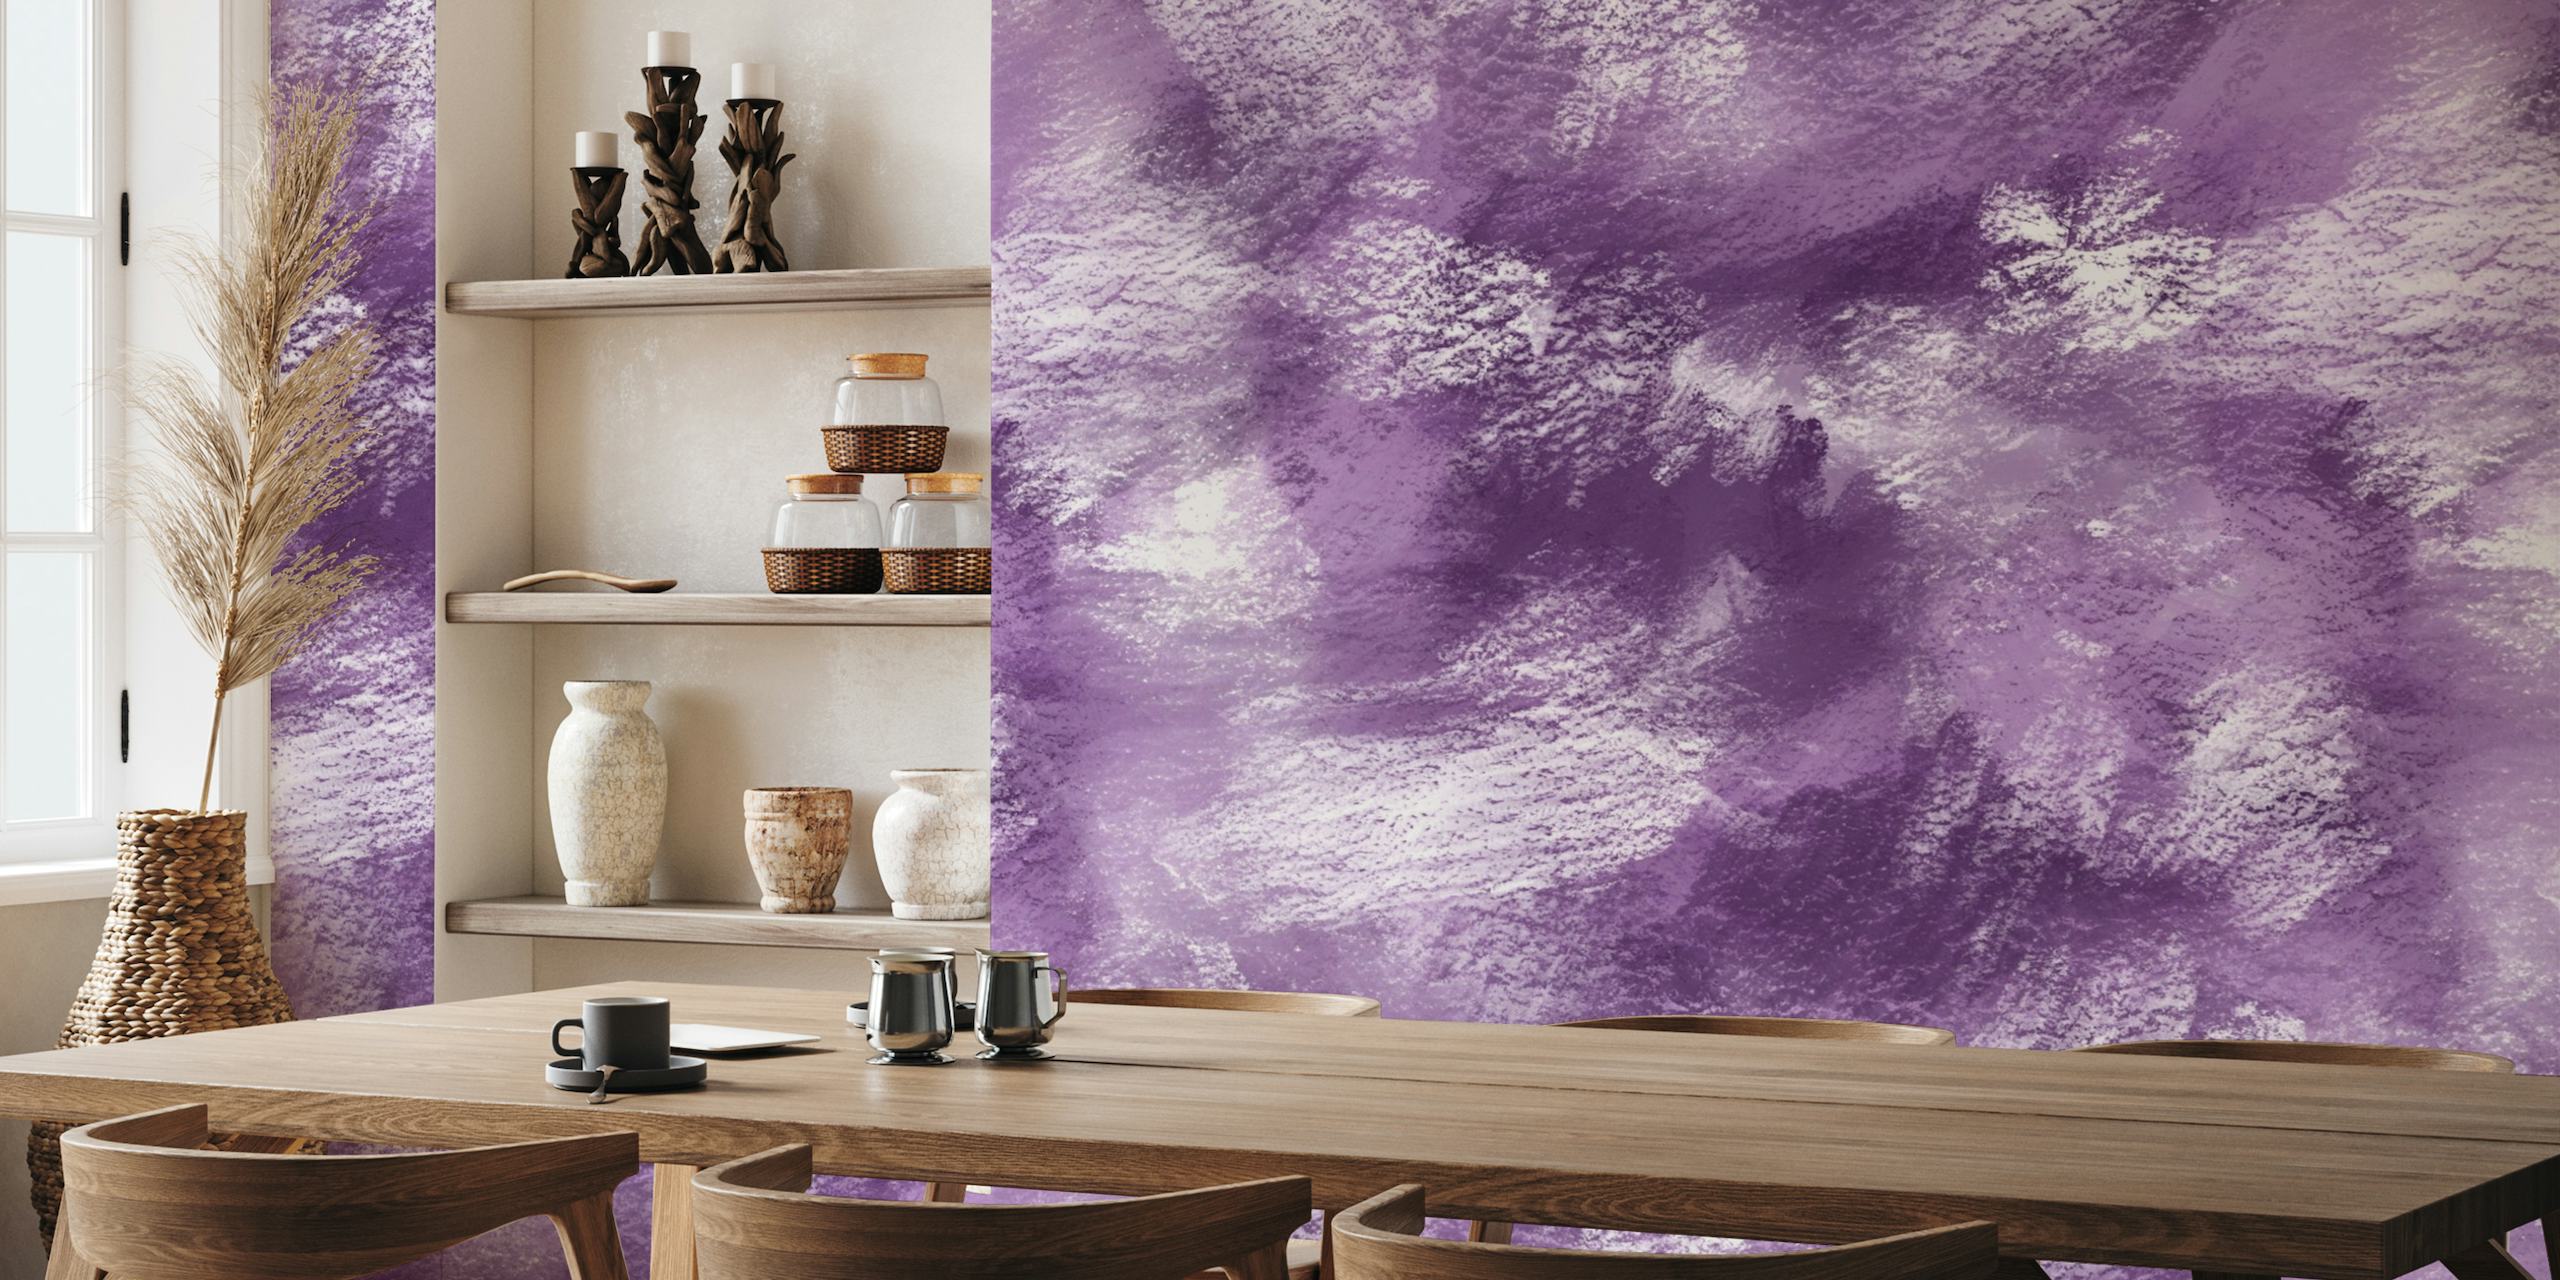 Painterly Background - Purple papel pintado